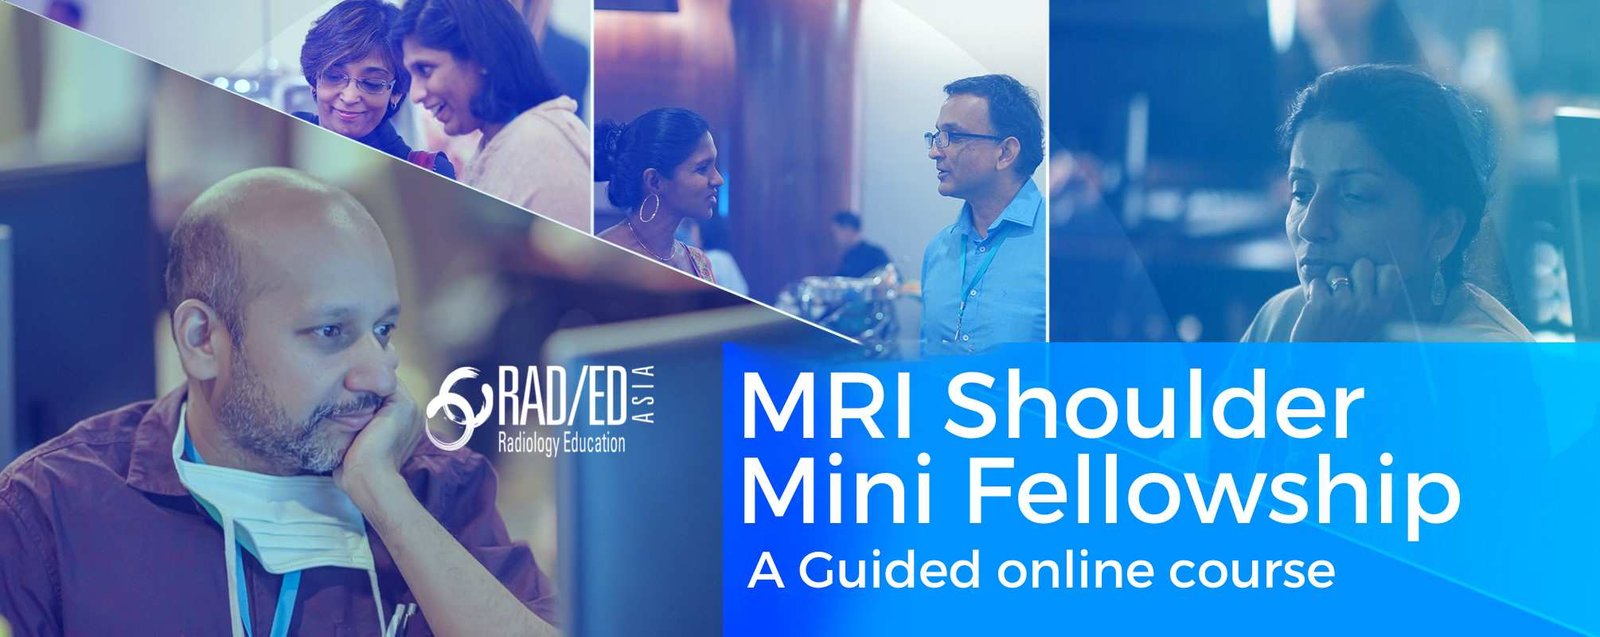 shoulder-mri-online-course-msk-shoulder-radiology-radedasia